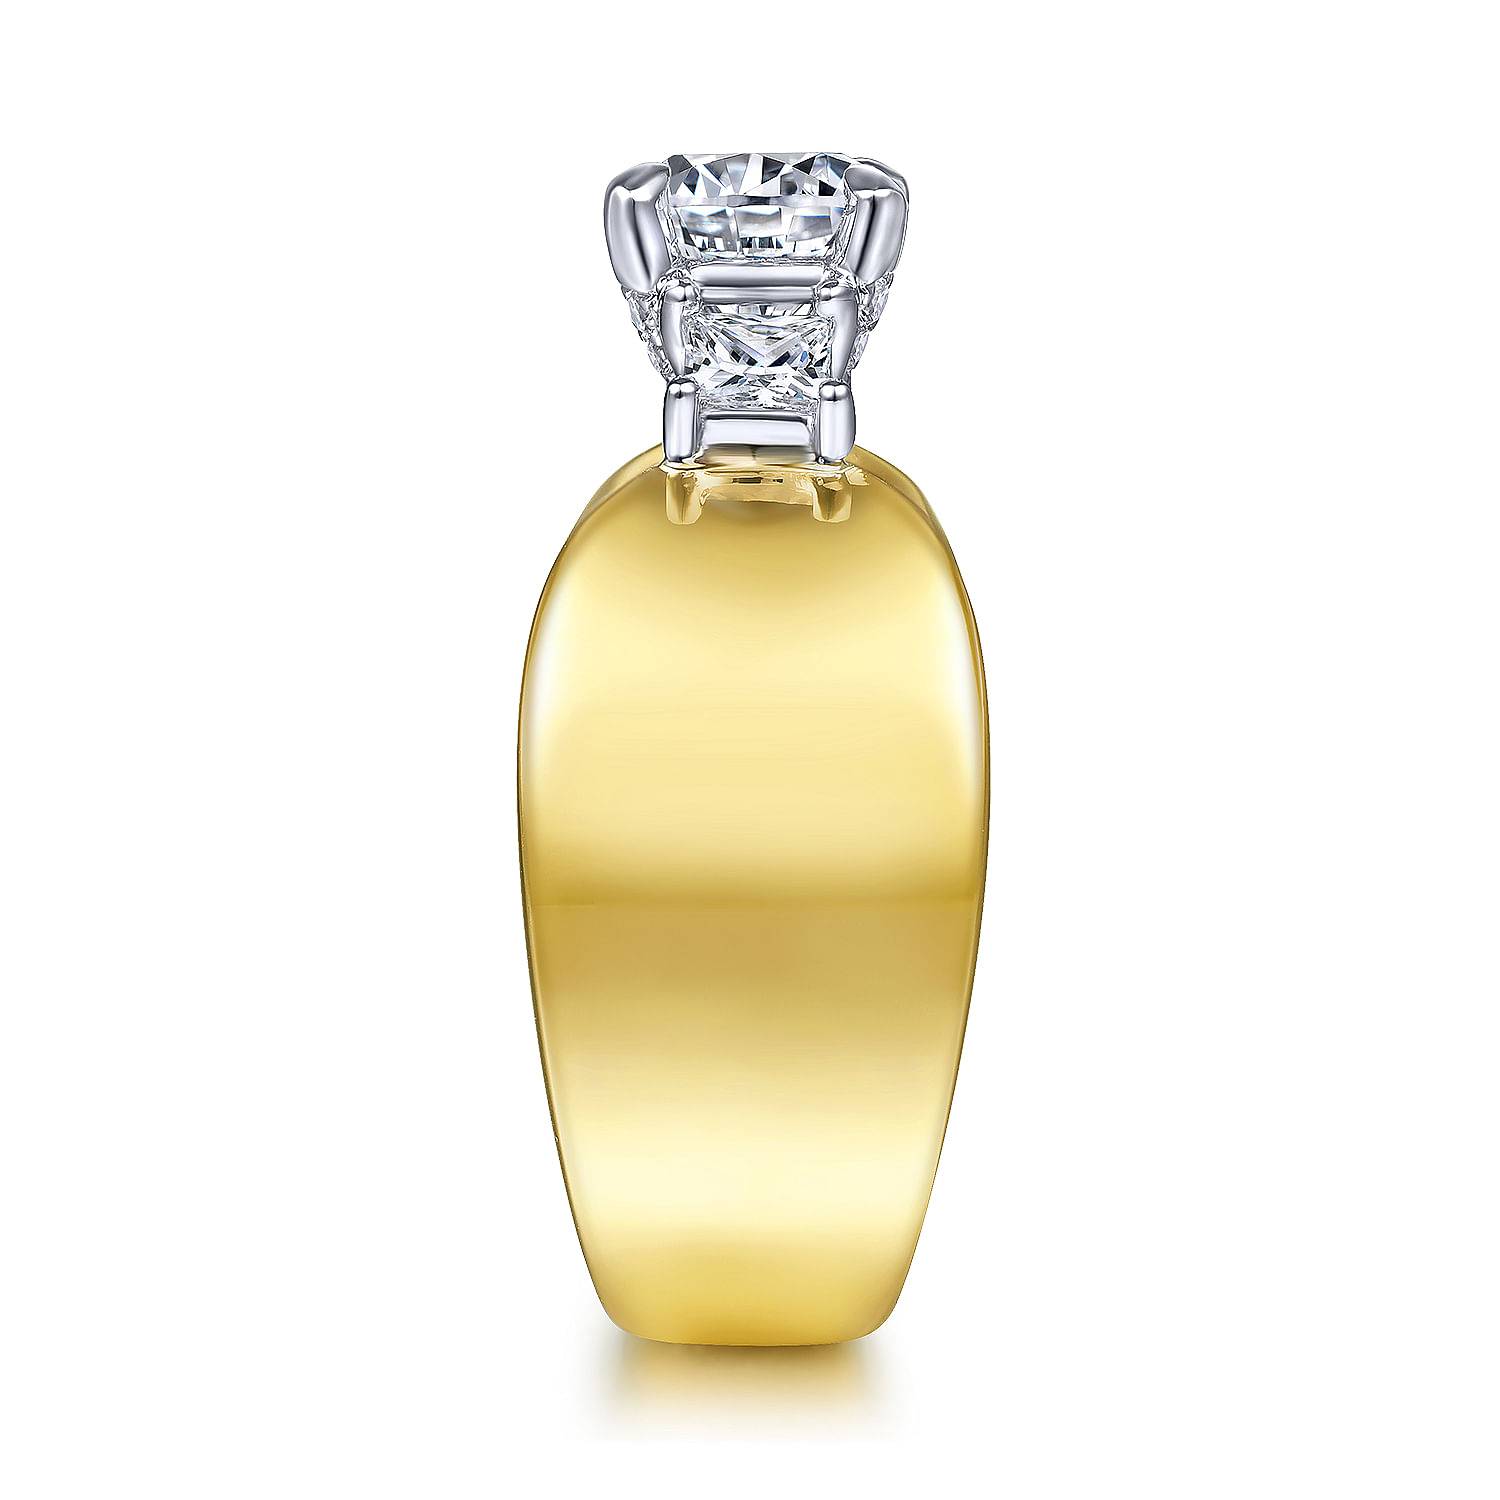 14K White-Yellow Gold Round 3 Stone Diamond Engagement Ring